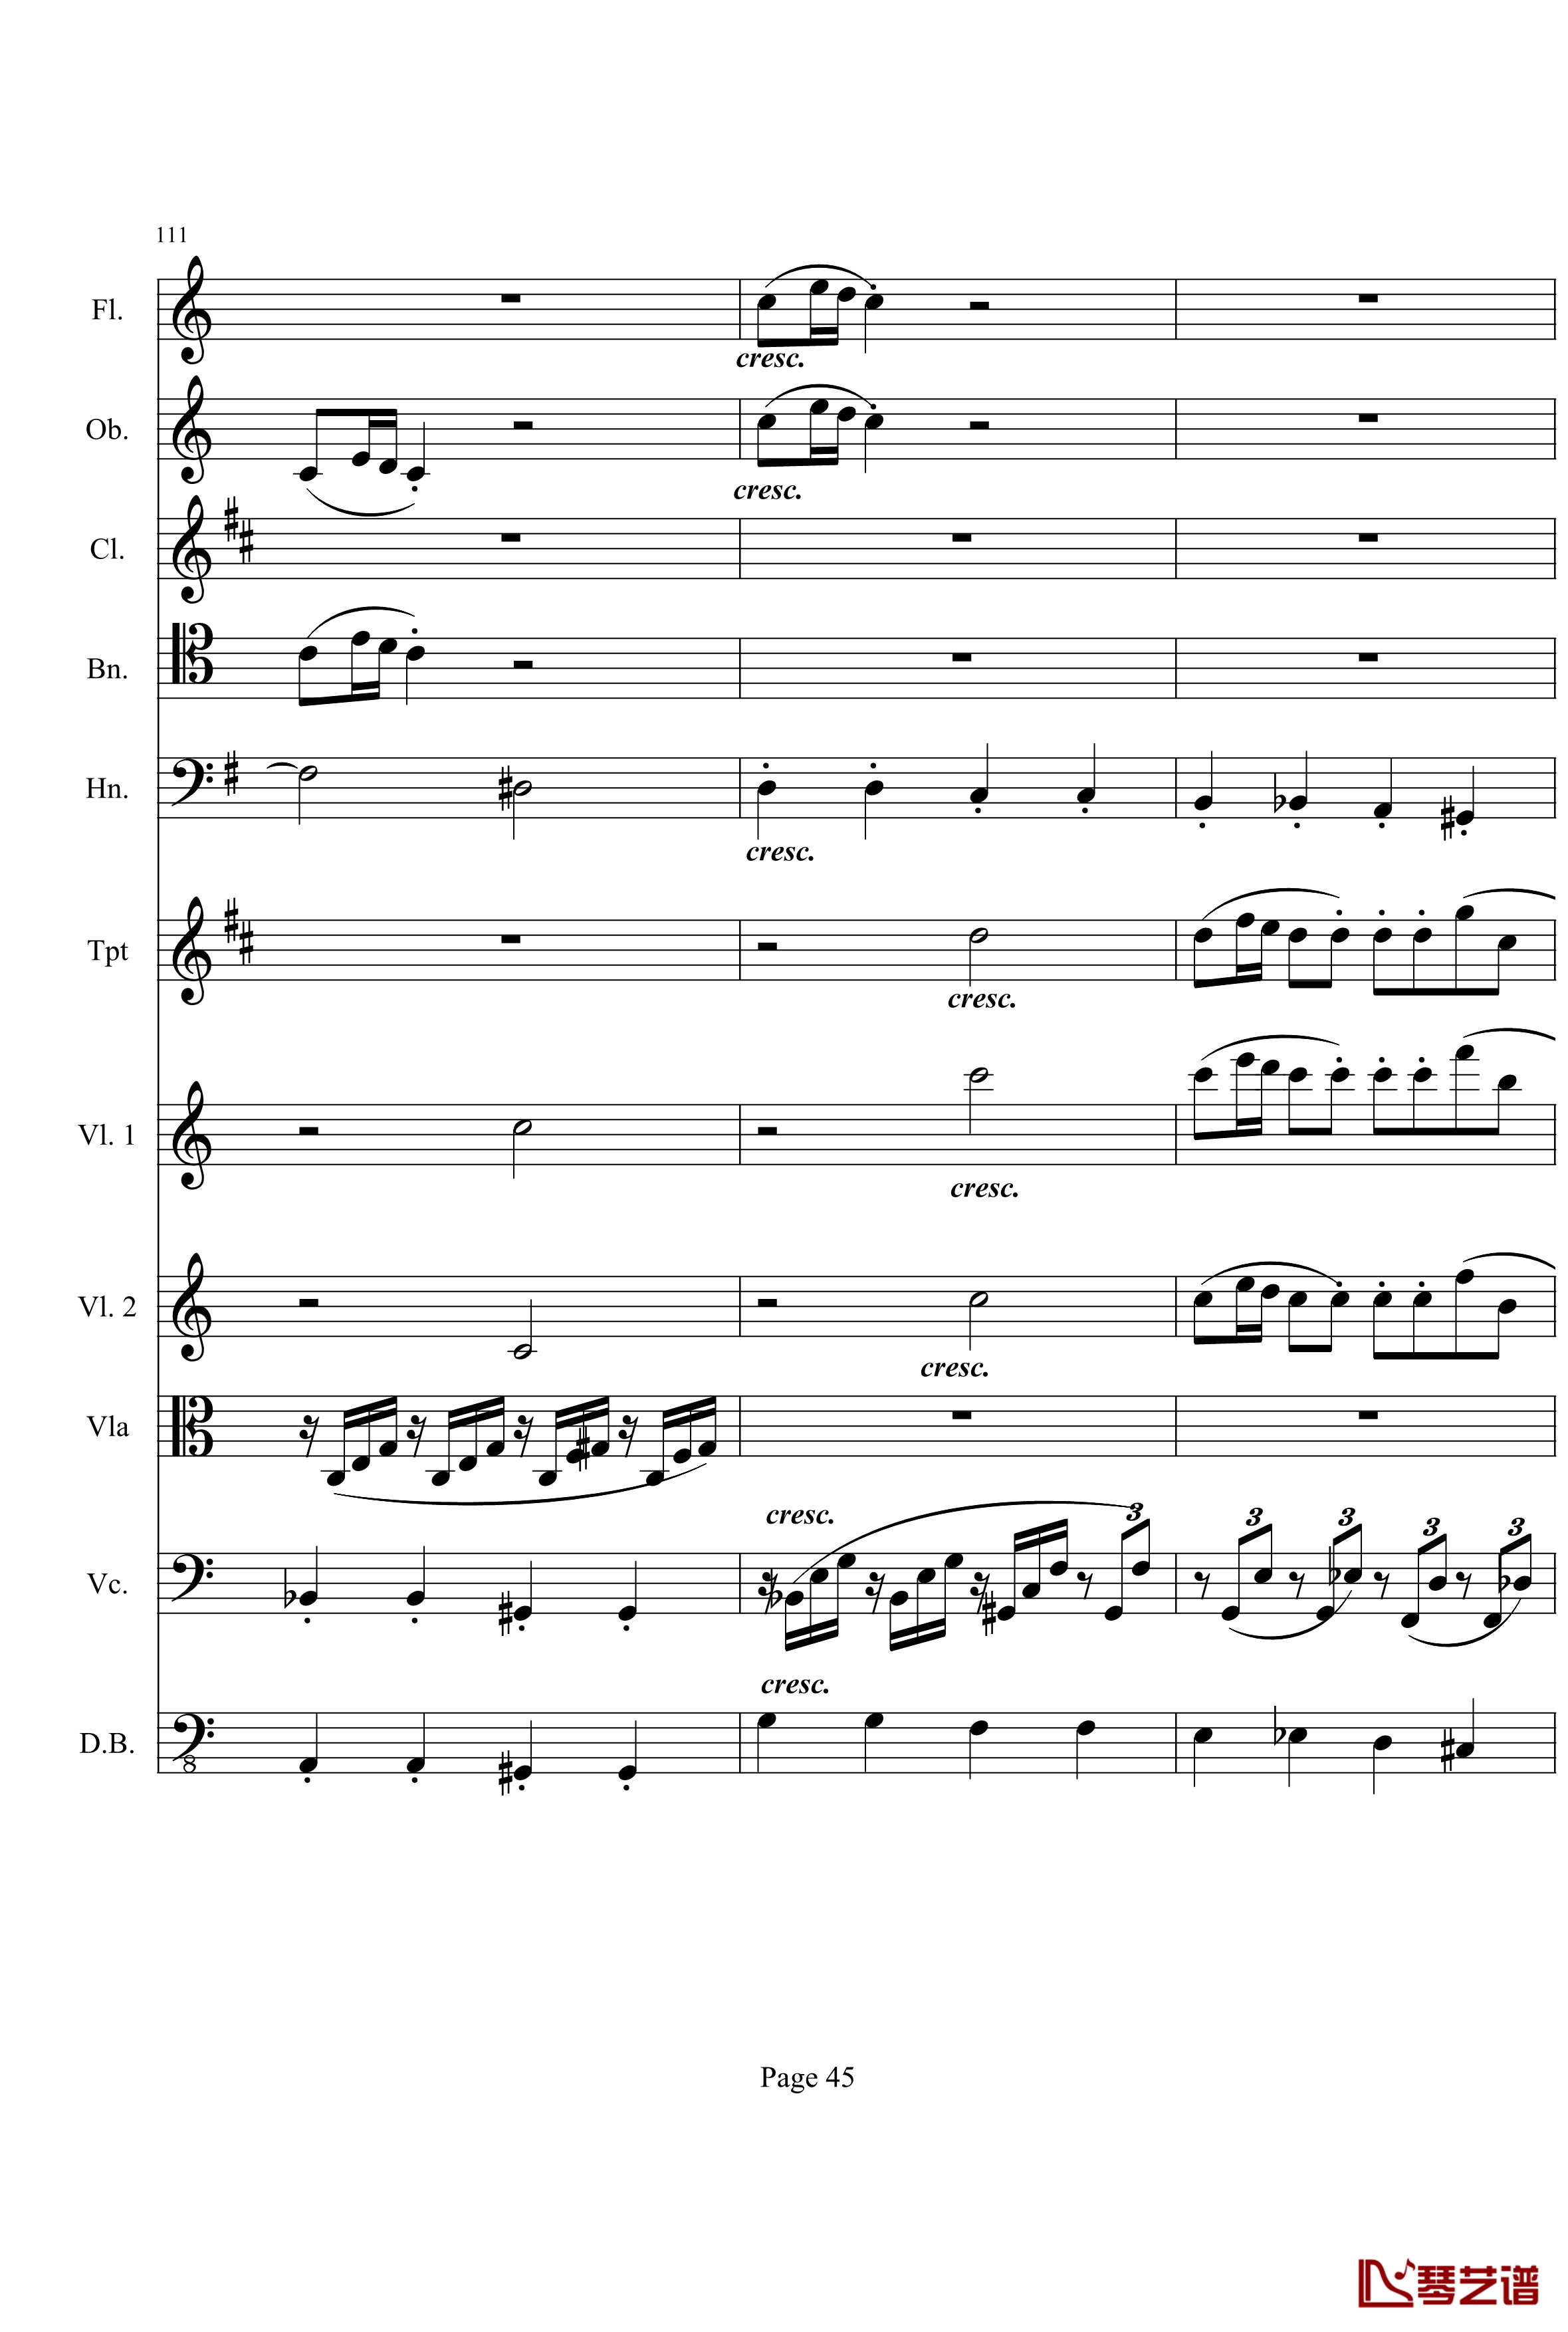 奏鸣曲之交响钢琴谱-第21首-Ⅰ-贝多芬-beethoven45